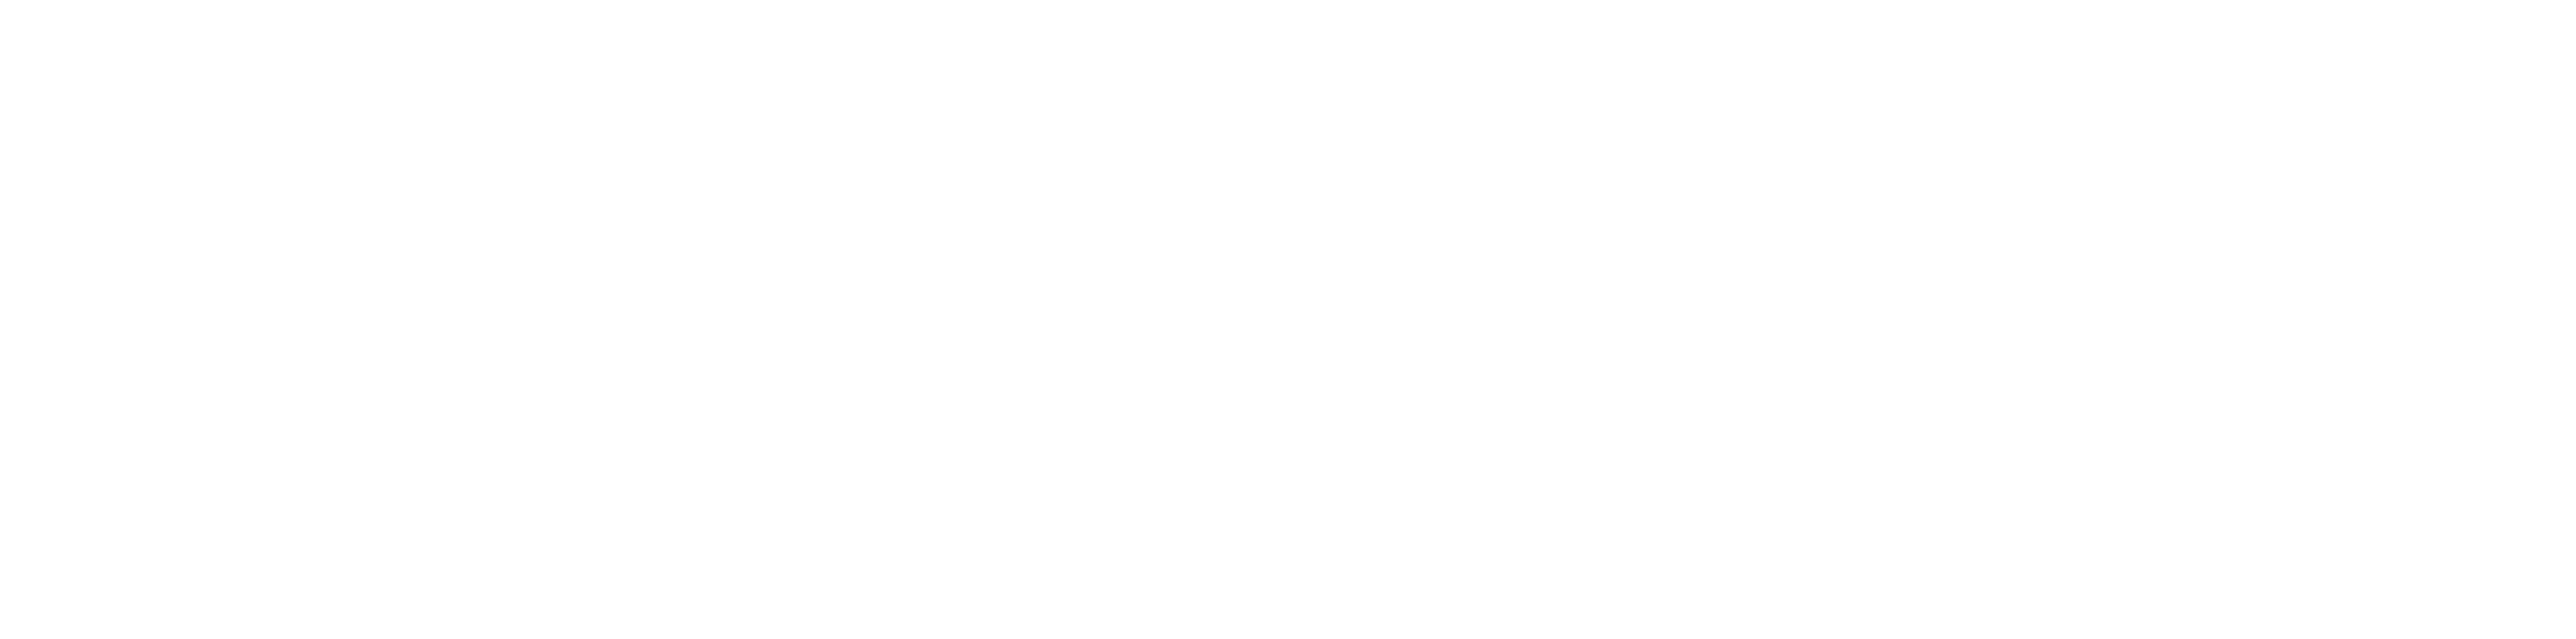 Medium logo white